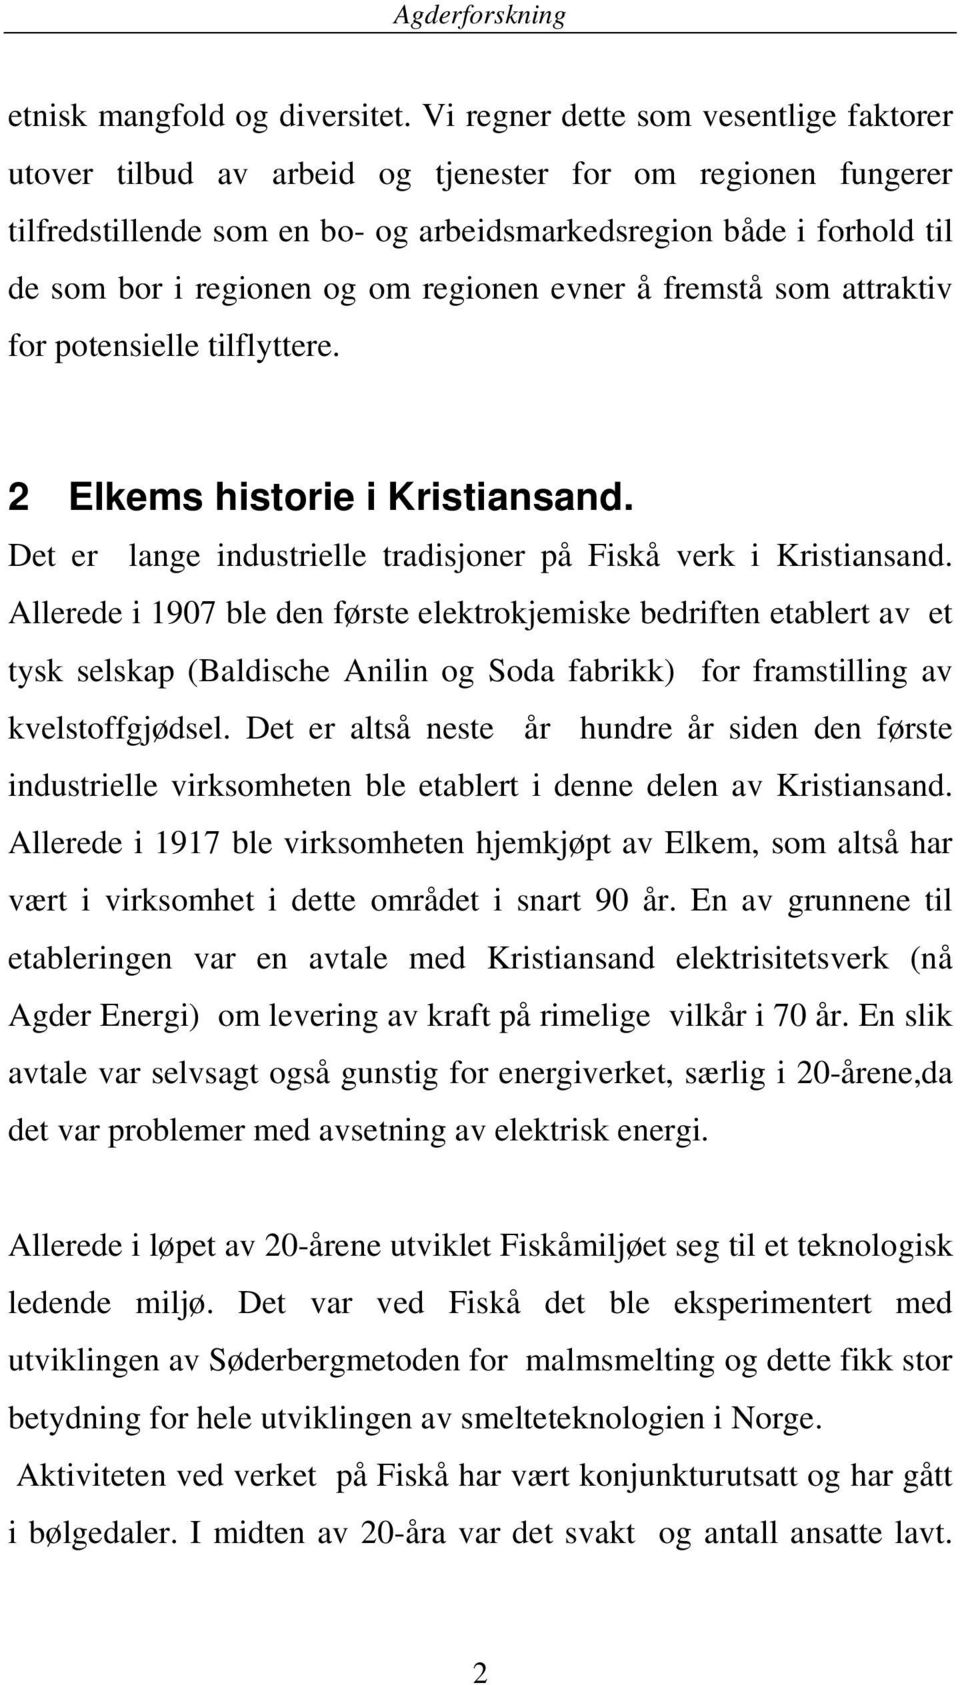 om regionen evner å fremstå som attraktiv for potensielle tilflyttere. 2 Elkems historie i Kristiansand. Det er lange industrielle tradisjoner på Fiskå verk i Kristiansand.